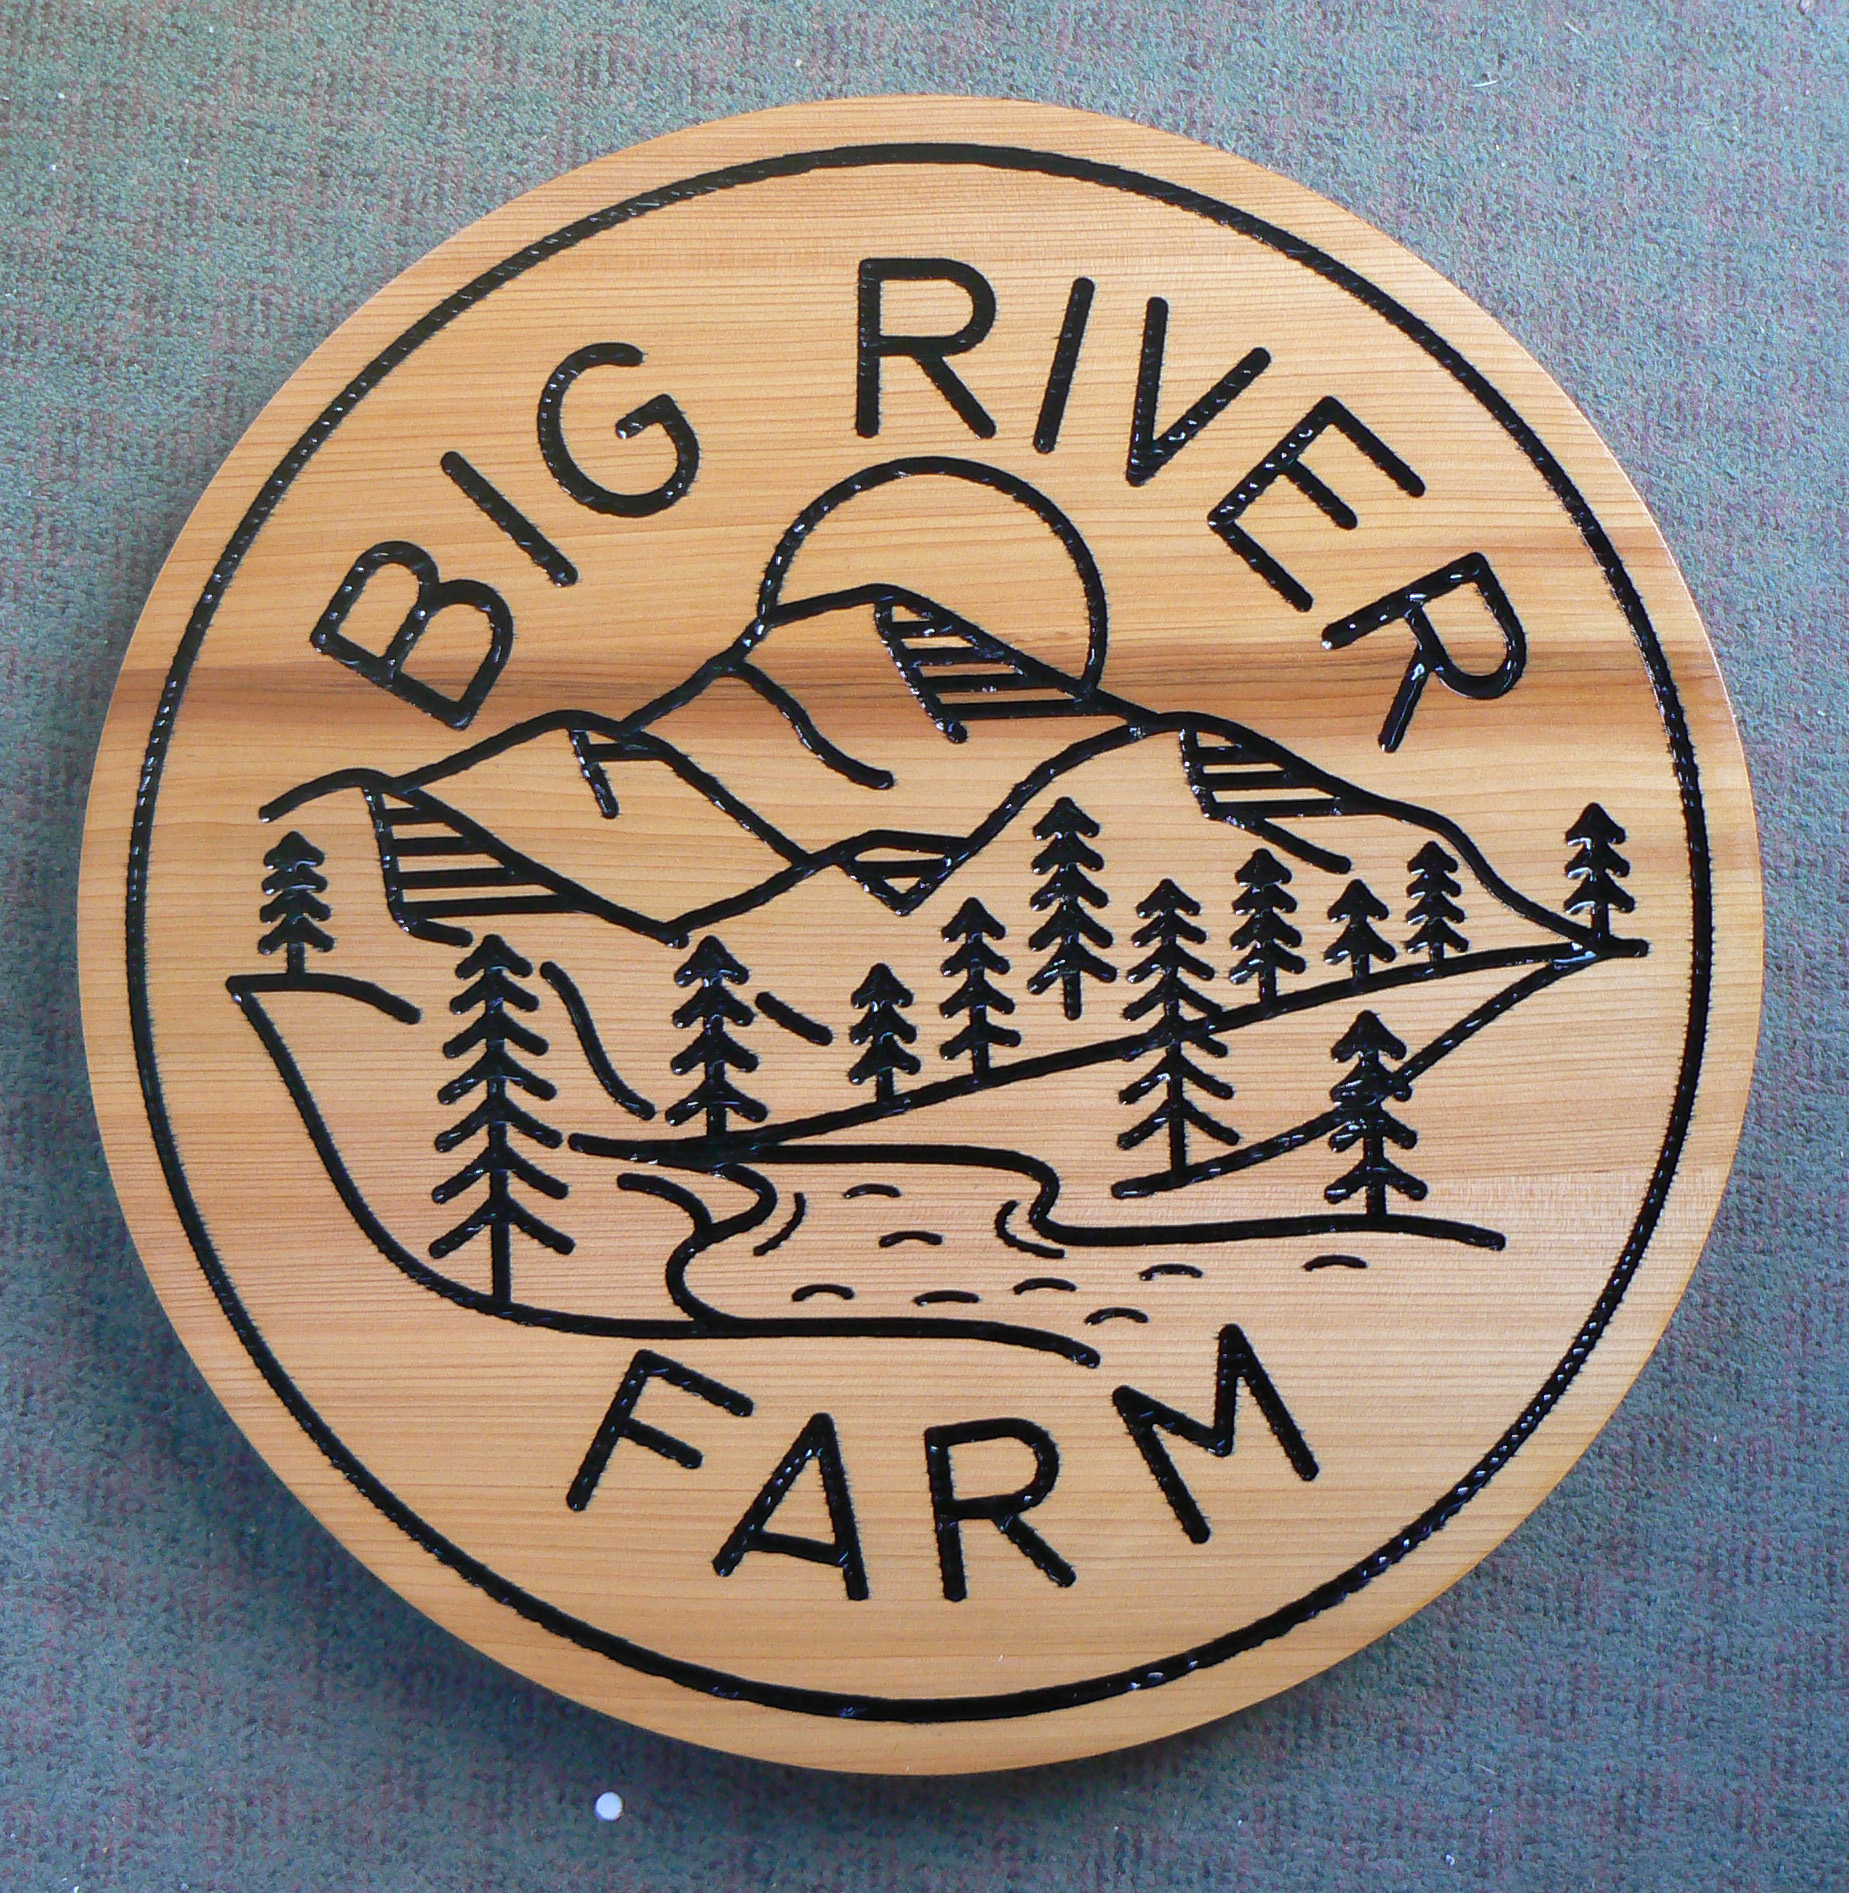 Big River Farm